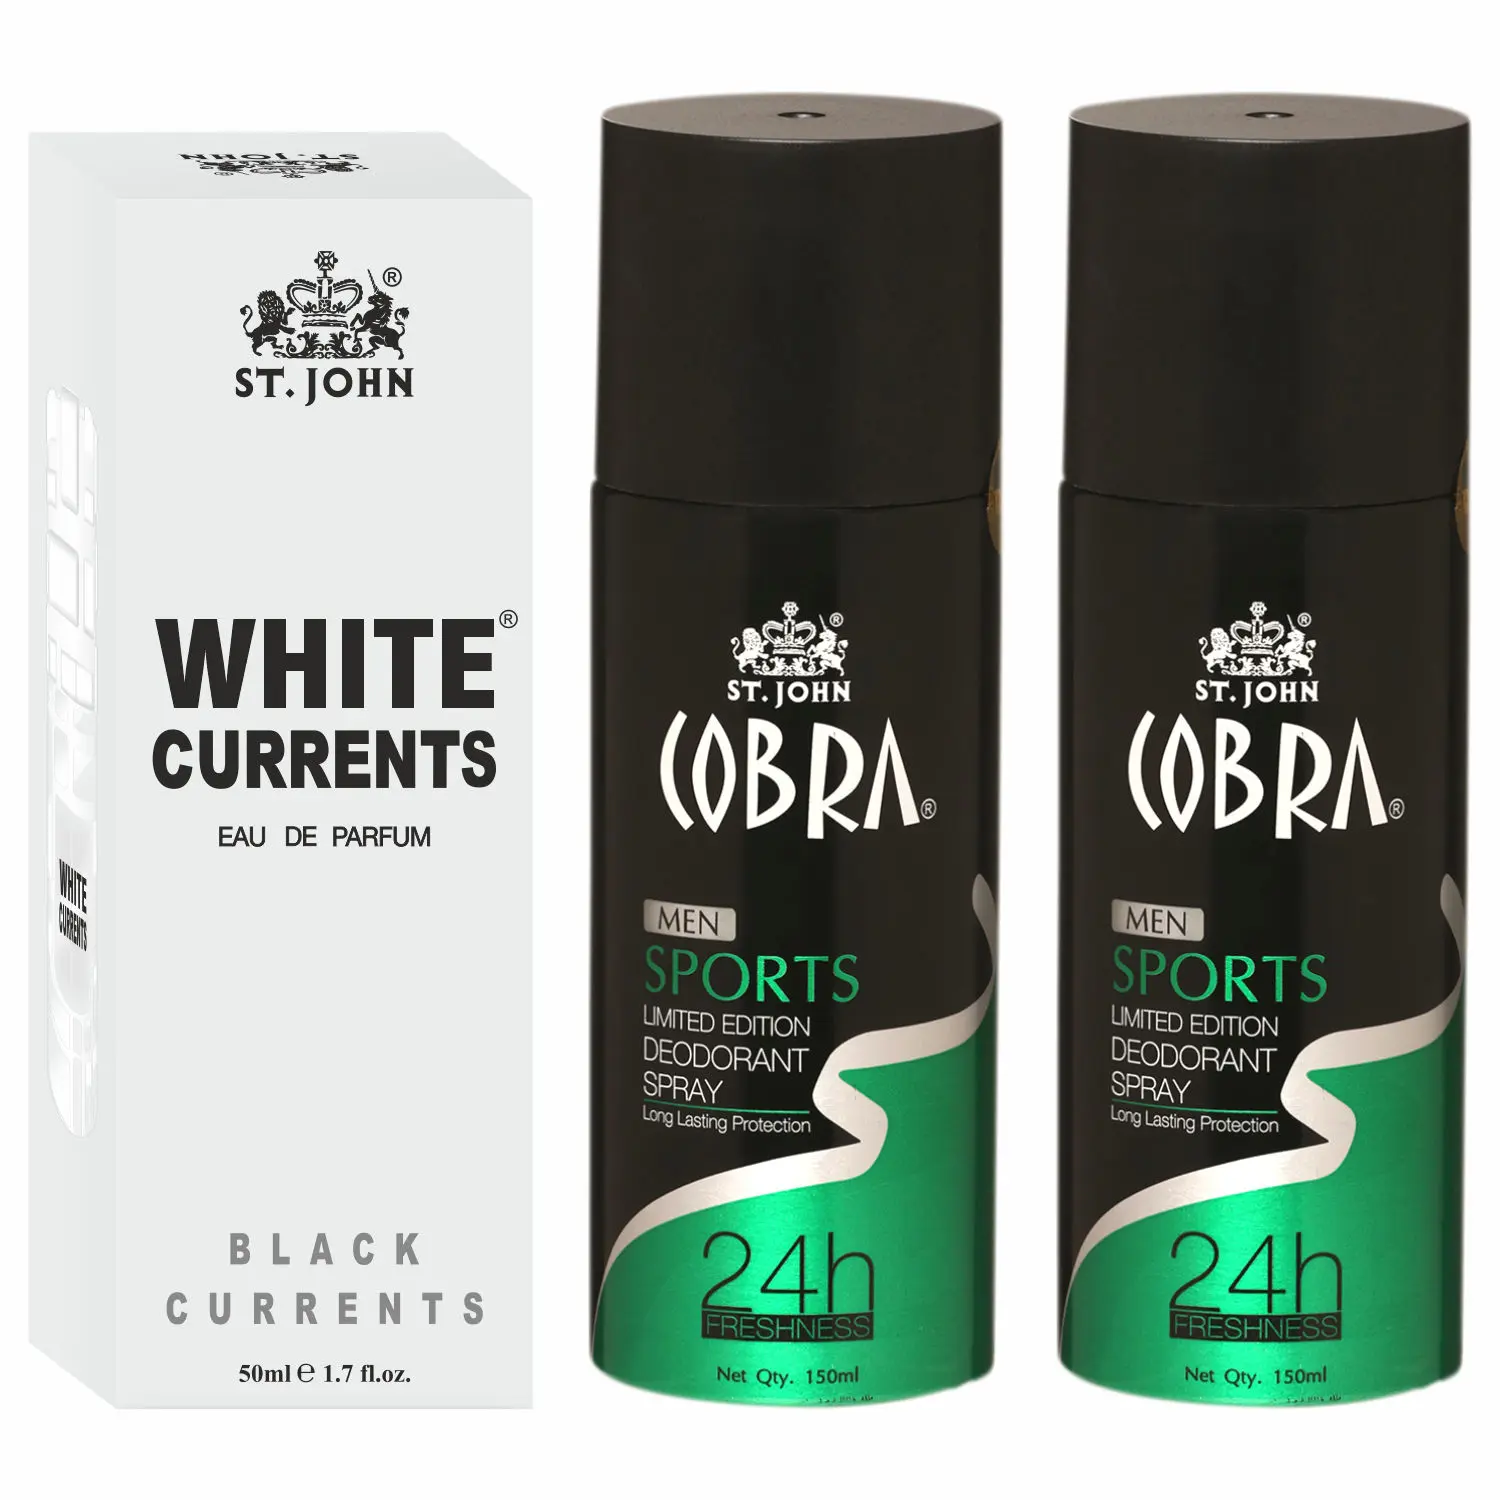 ST-JOHN Cobra Deodrant Sports 150 ml Pack of 2& Cobra Black Current 50ml Perfume Combo Gift Pack Perfume Body Spray - For Men & Women (350 ml, Pack of 3)